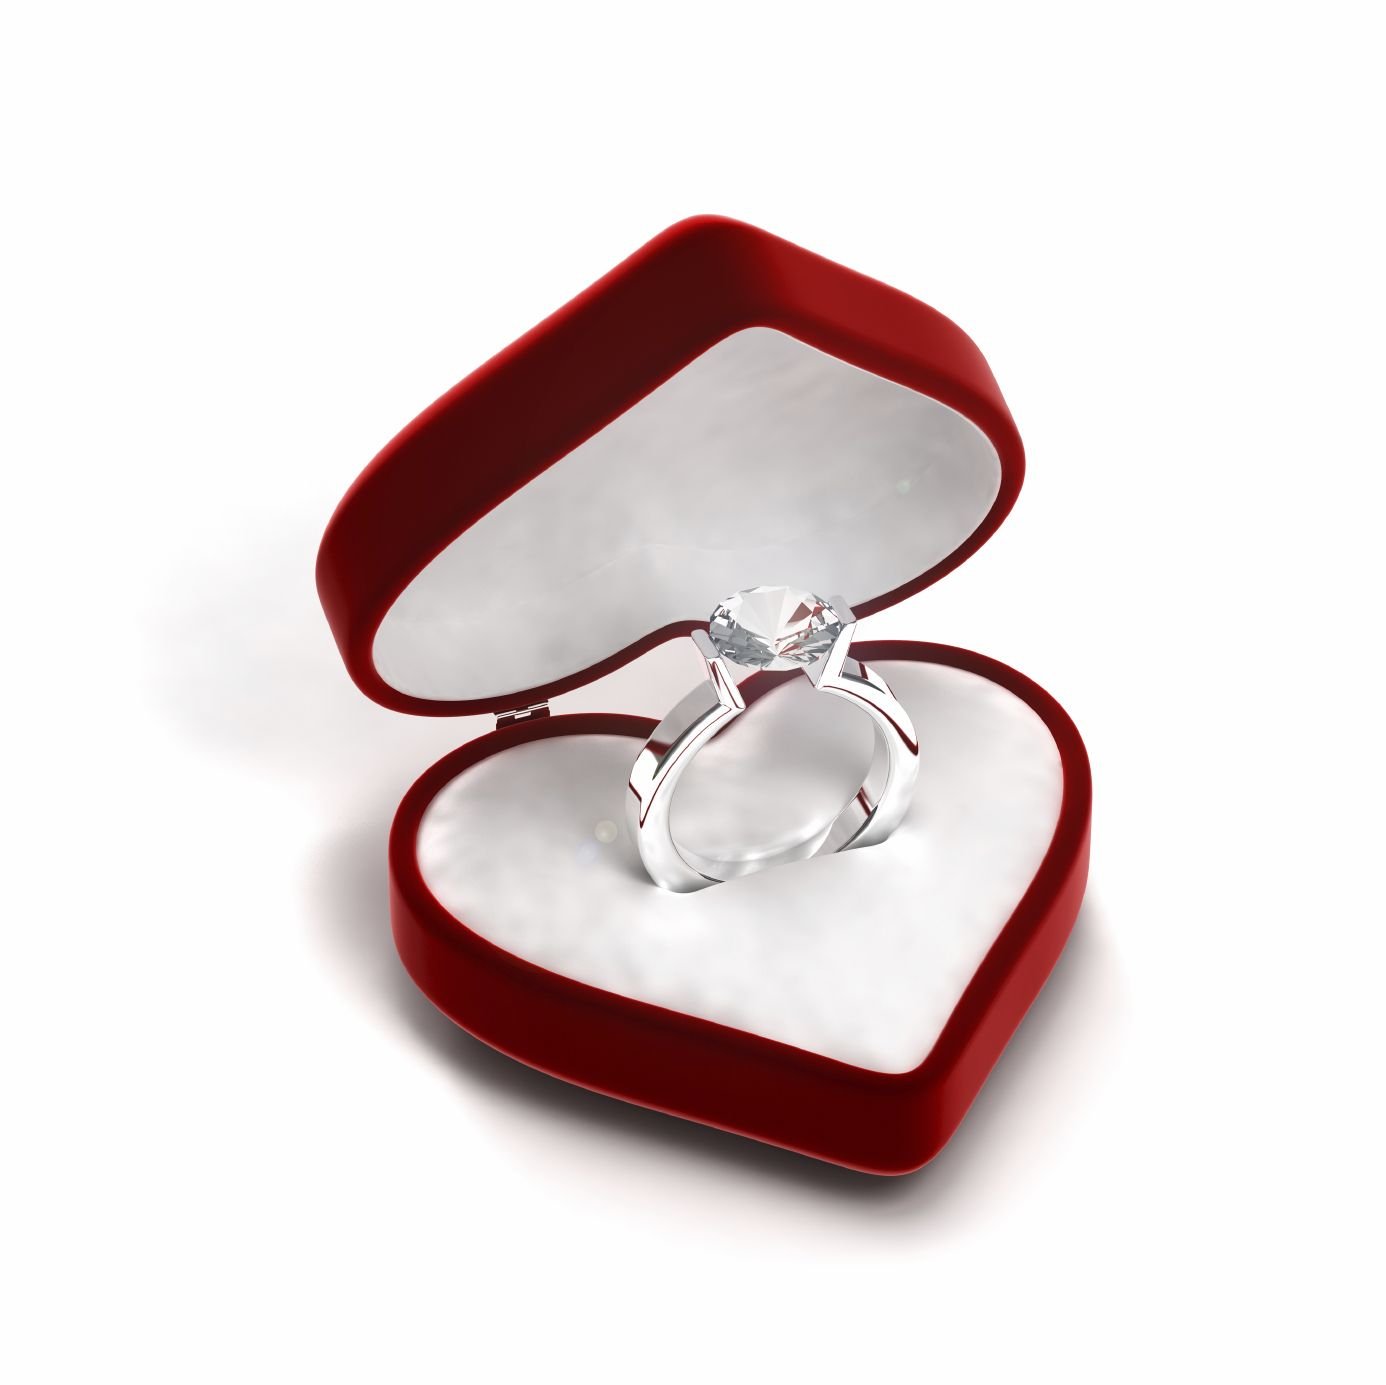 Получить кольцо в подарок. Обручальное кольцо в коробочке. Кольцо для предложения. Помолвочное кольцо в коробочке. Свадебные кольца в коробочке.